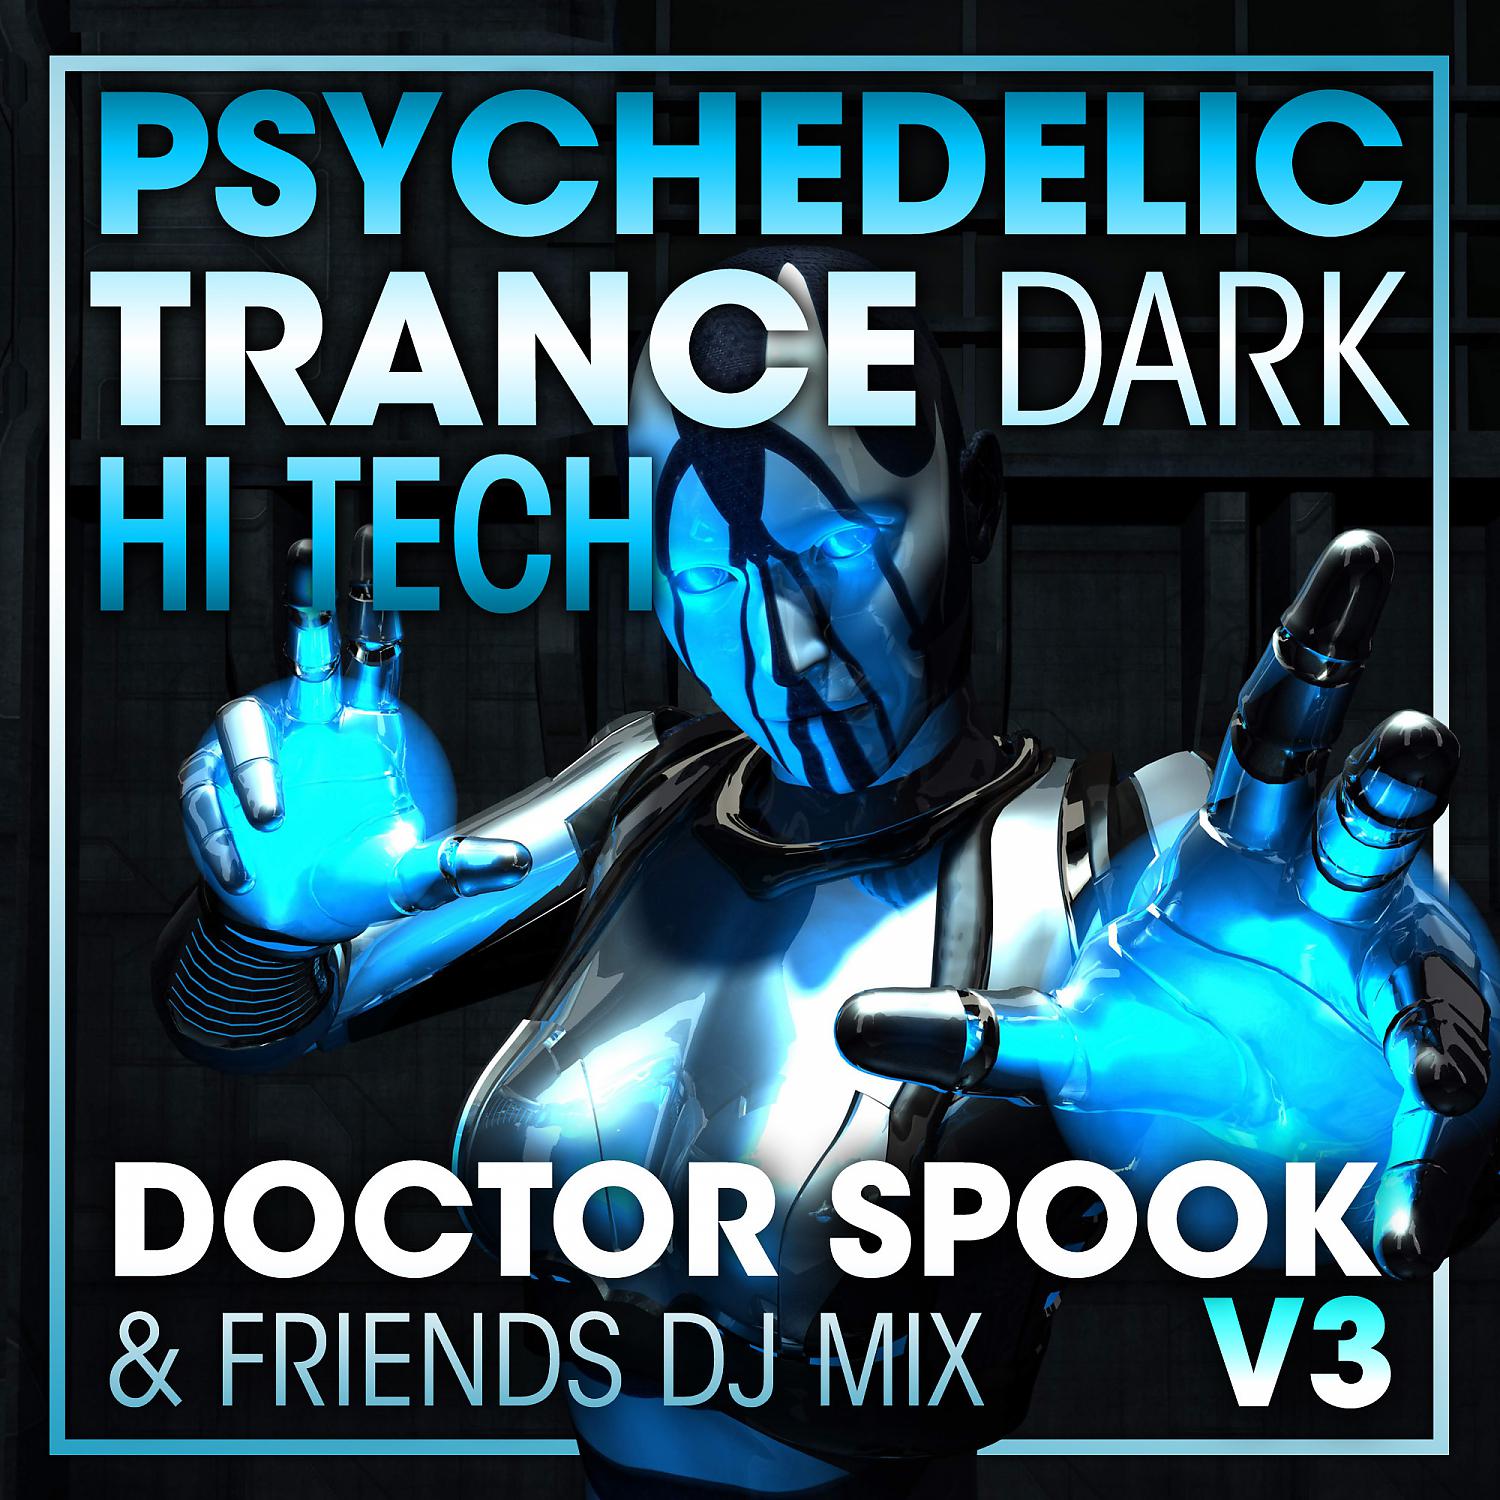 Doctor Spook - слушать песни исполнителя онлайн бесплатно на Zvuk.com